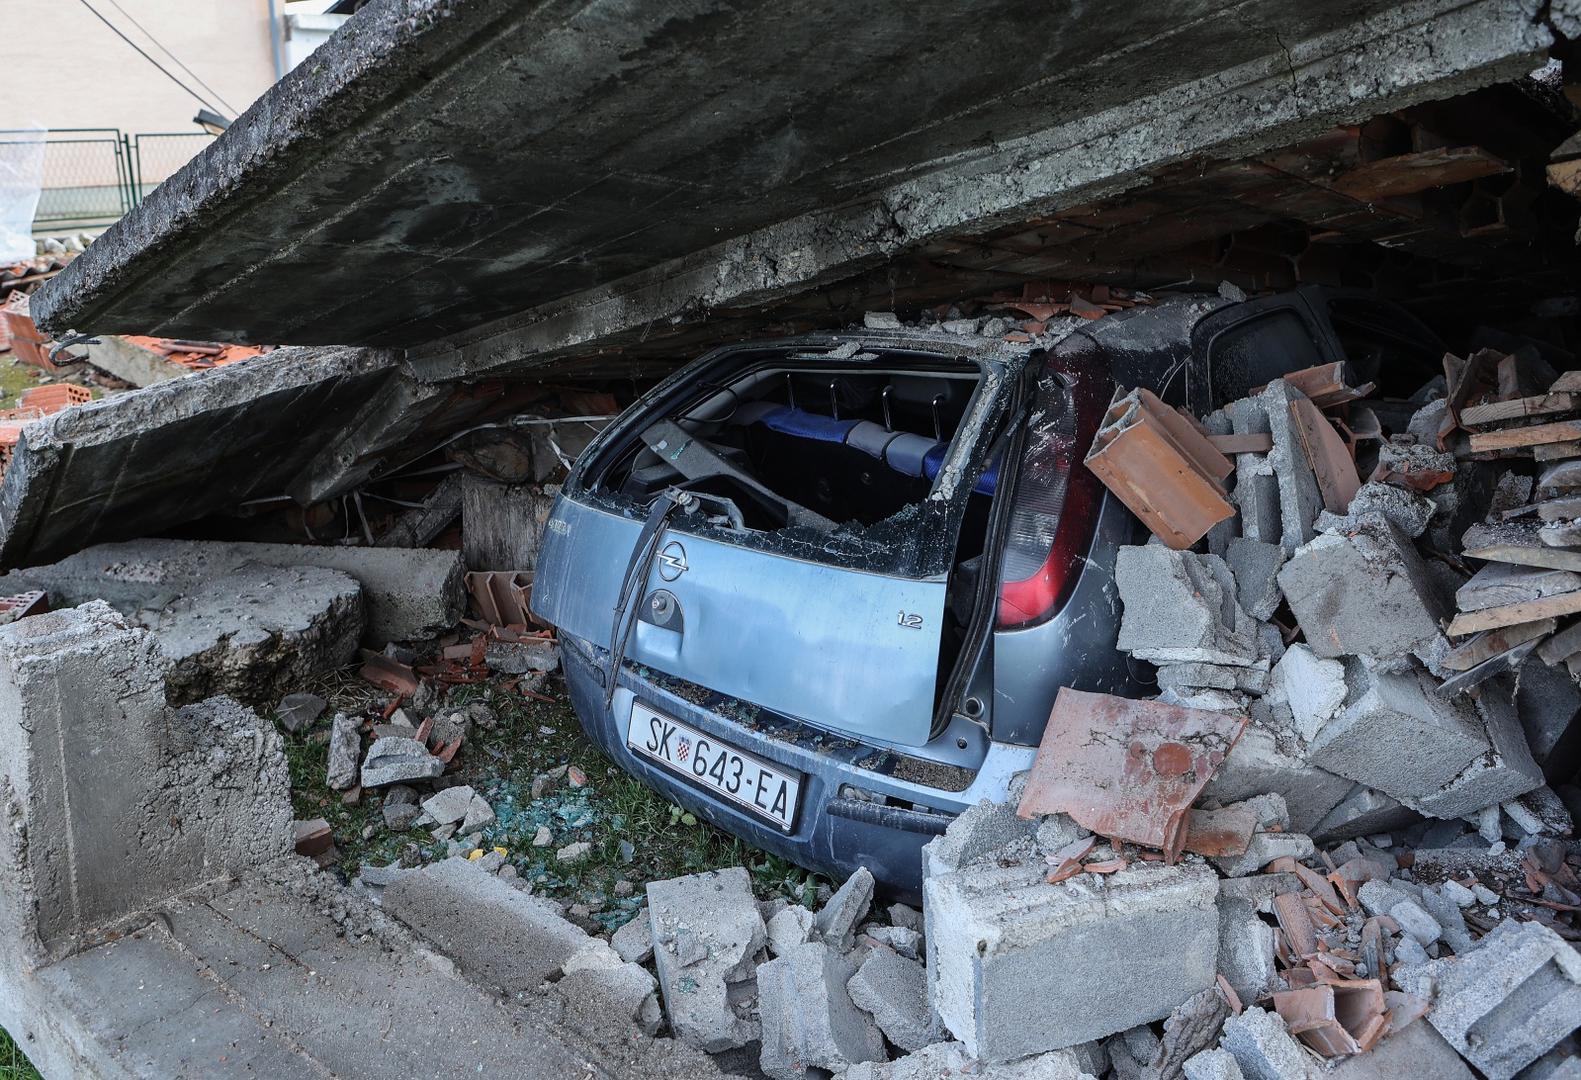 01.01.2021., Petrinja - Posljedice razornog potresa koji je pogodio grad Petrinju. Zatrpan automobil pod rusevinama.
Photo: Marko Prpic/PIXSELL